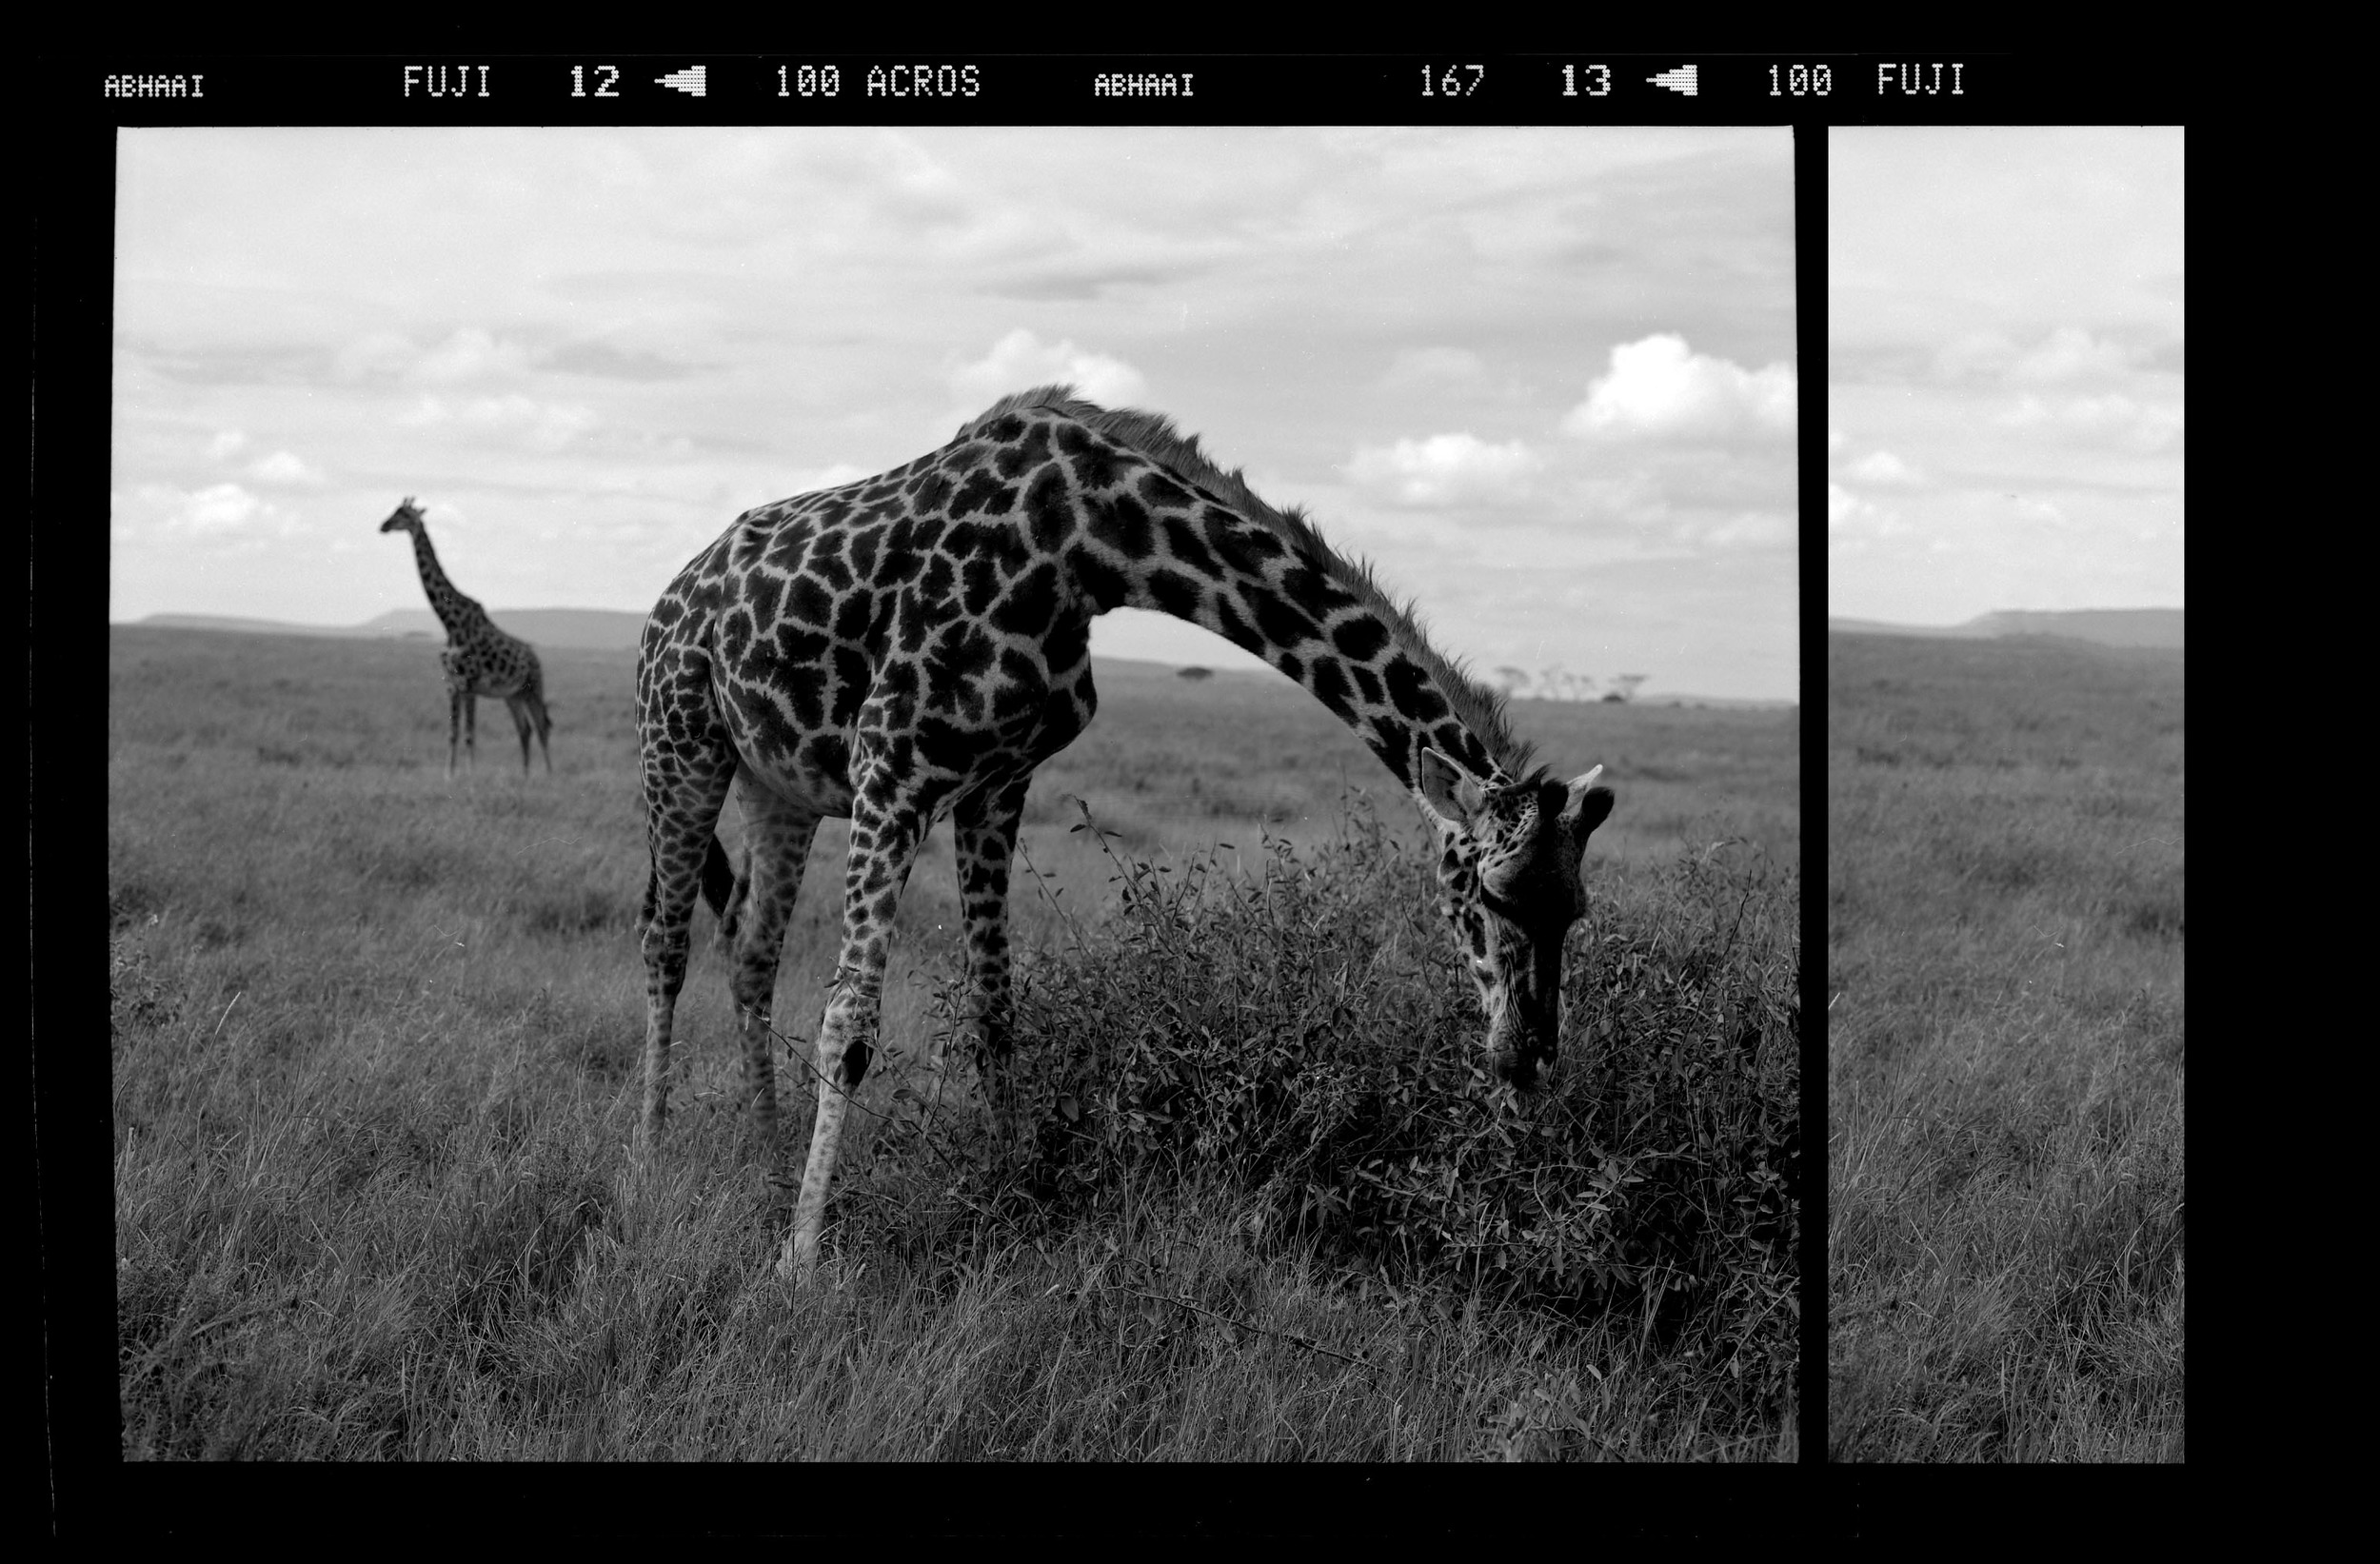  "Narrative of a Peaceful Giraffe"&nbsp; 